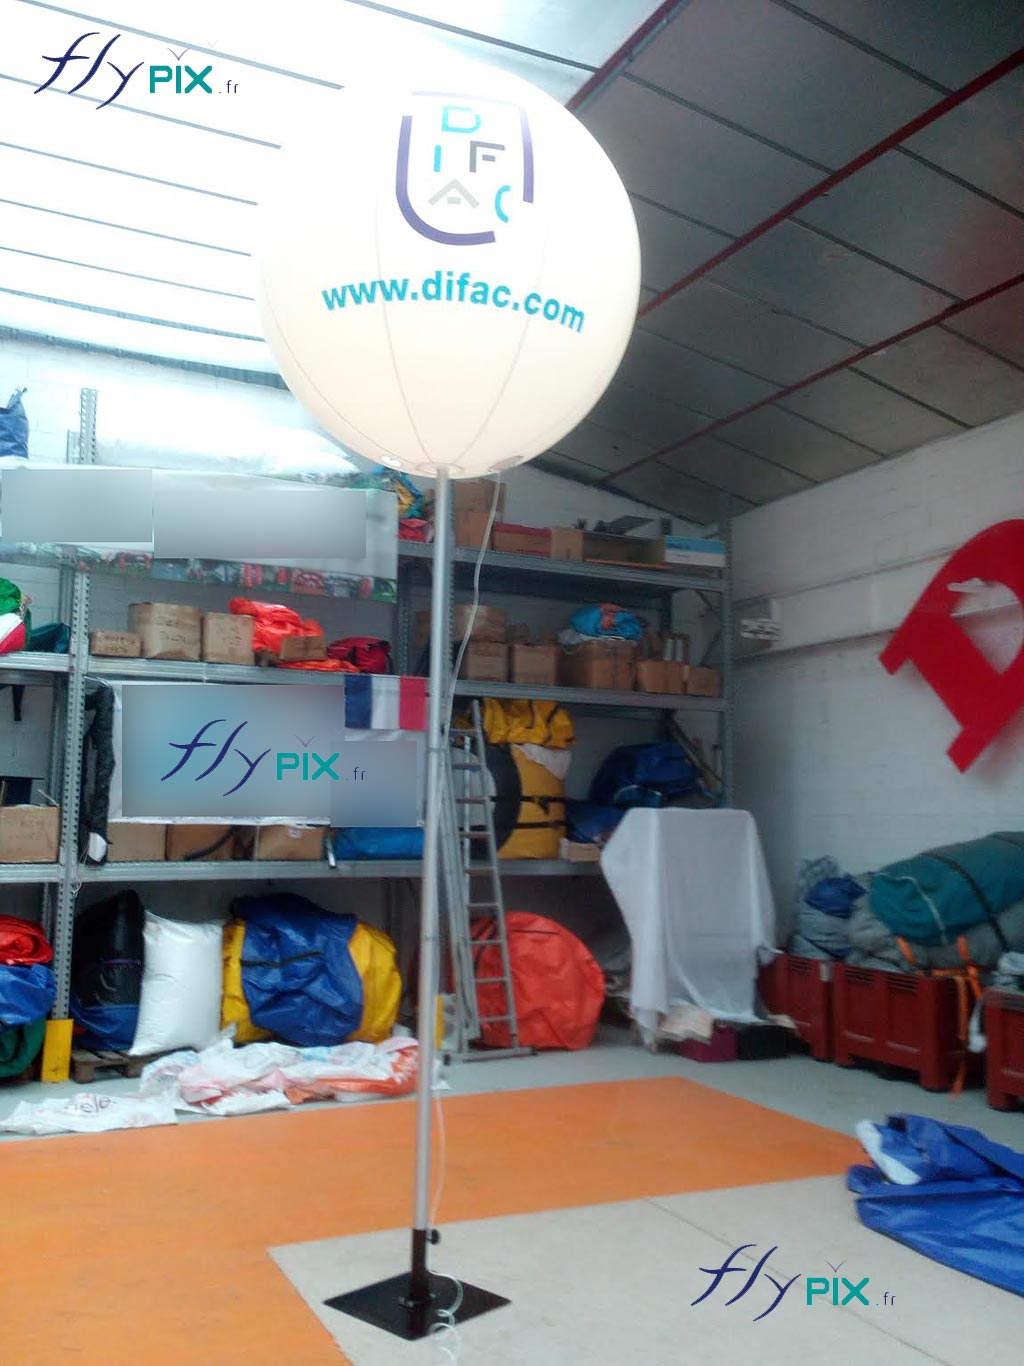 Le ballon sur mat, imprimé et imprimé, personnalisé, de 1.5 m de diamètre, en enveloppe PVC 0.18 mm, réalisé sur mesure pour DIFAC par nos soins.